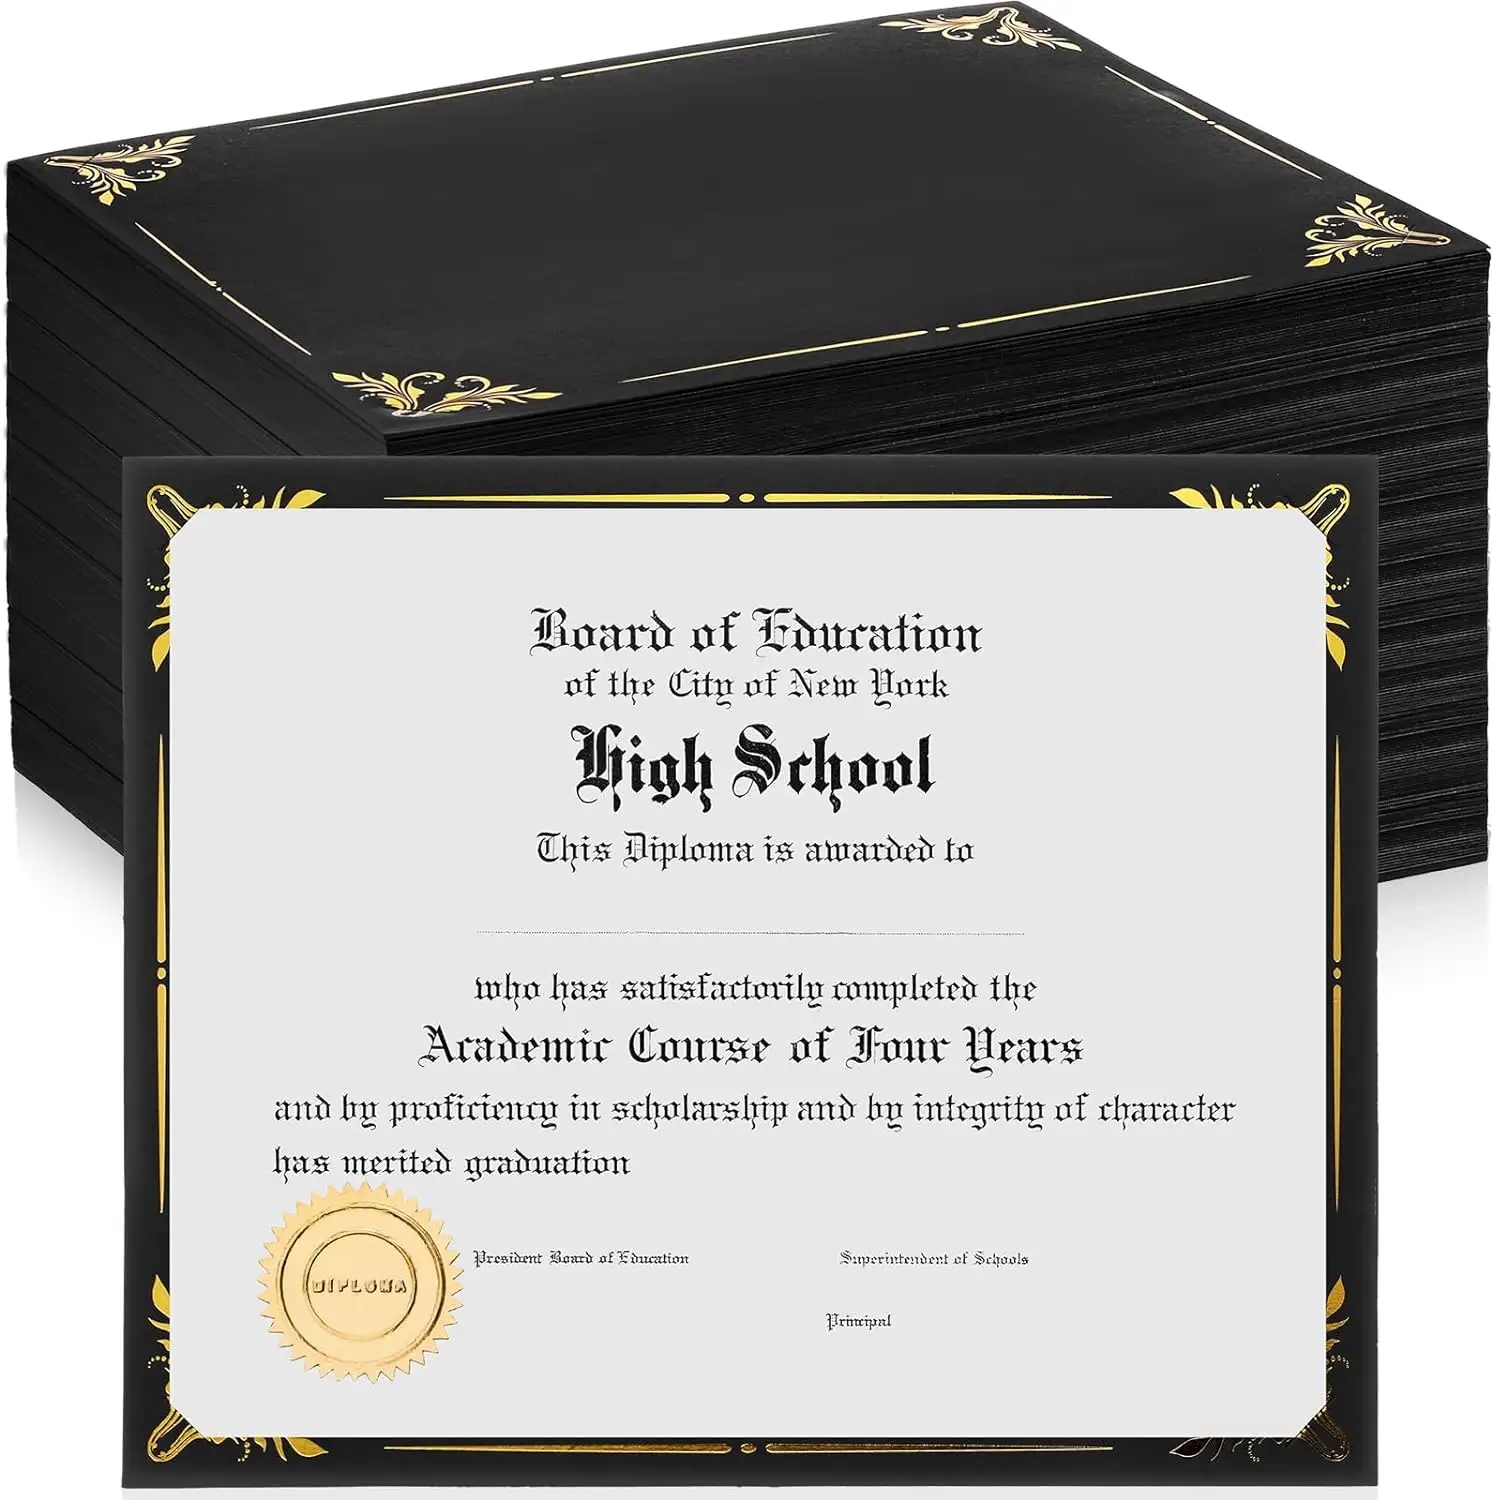 Schwarz 8,5 × 11 Zertifikathober einseitiger Diplomathober Massenbuchstabenformat Dokument Zertifikathober für Graduierung